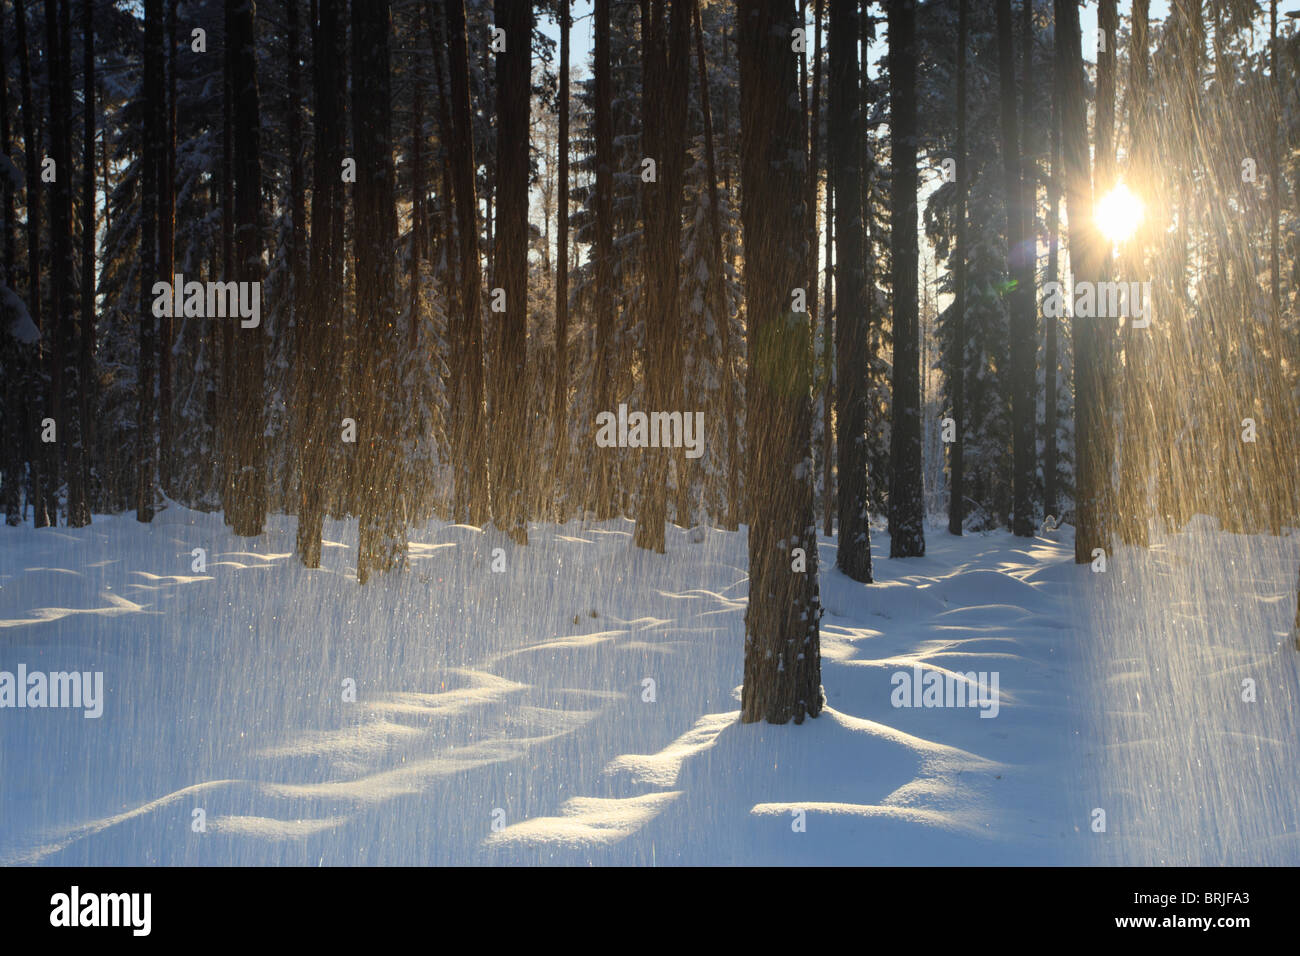 Llueve nieve y haces de luz a través de un bosque cubierto de nieve en el suelo. Foto de stock